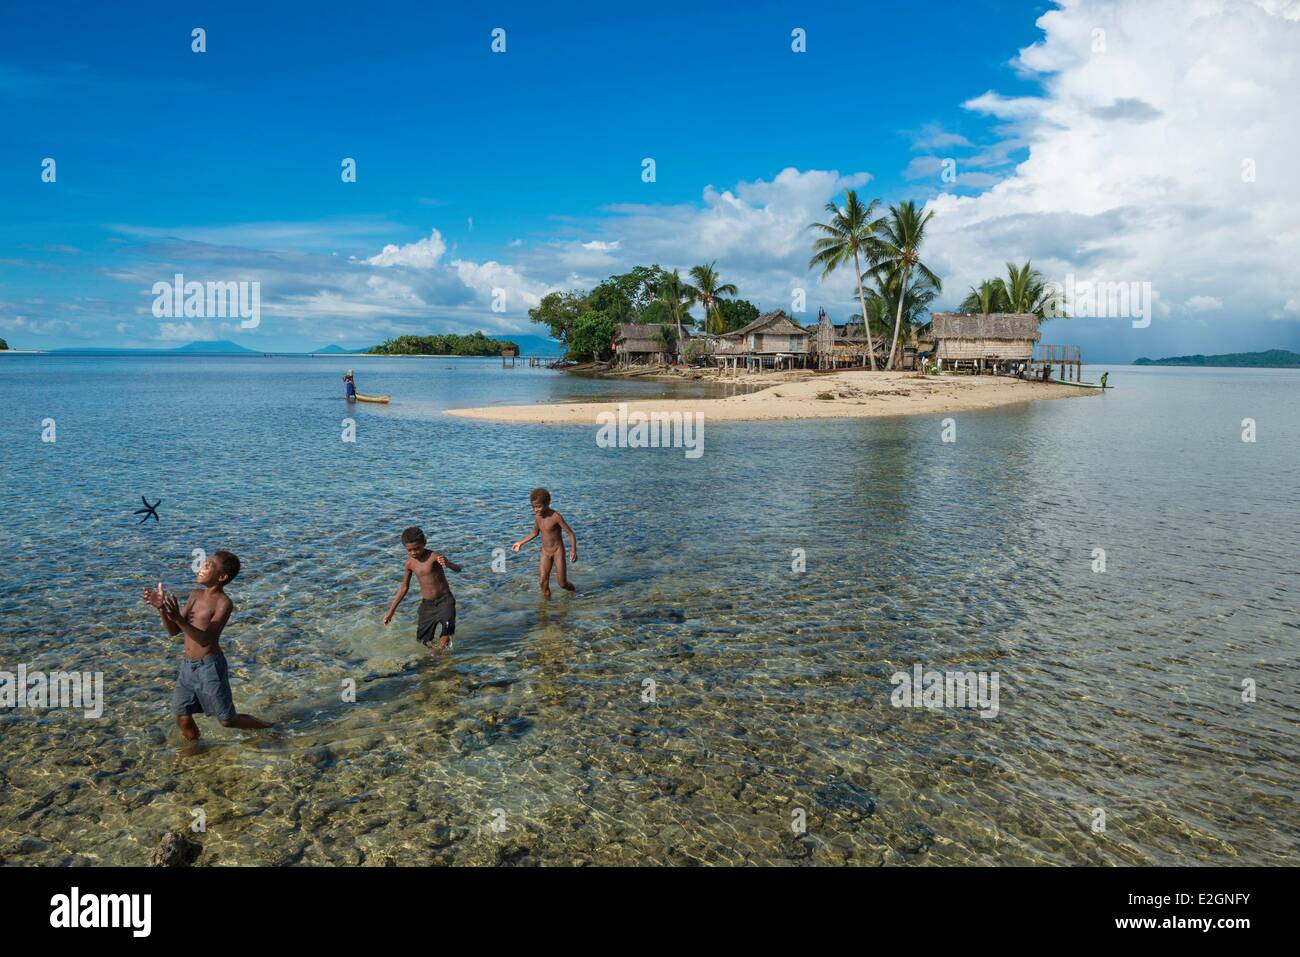 La Papouasie-Nouvelle-Guinée l'île de Nouvelle Bretagne la province de West New Britain Talasea Kimbe district area Vesse island Banque D'Images